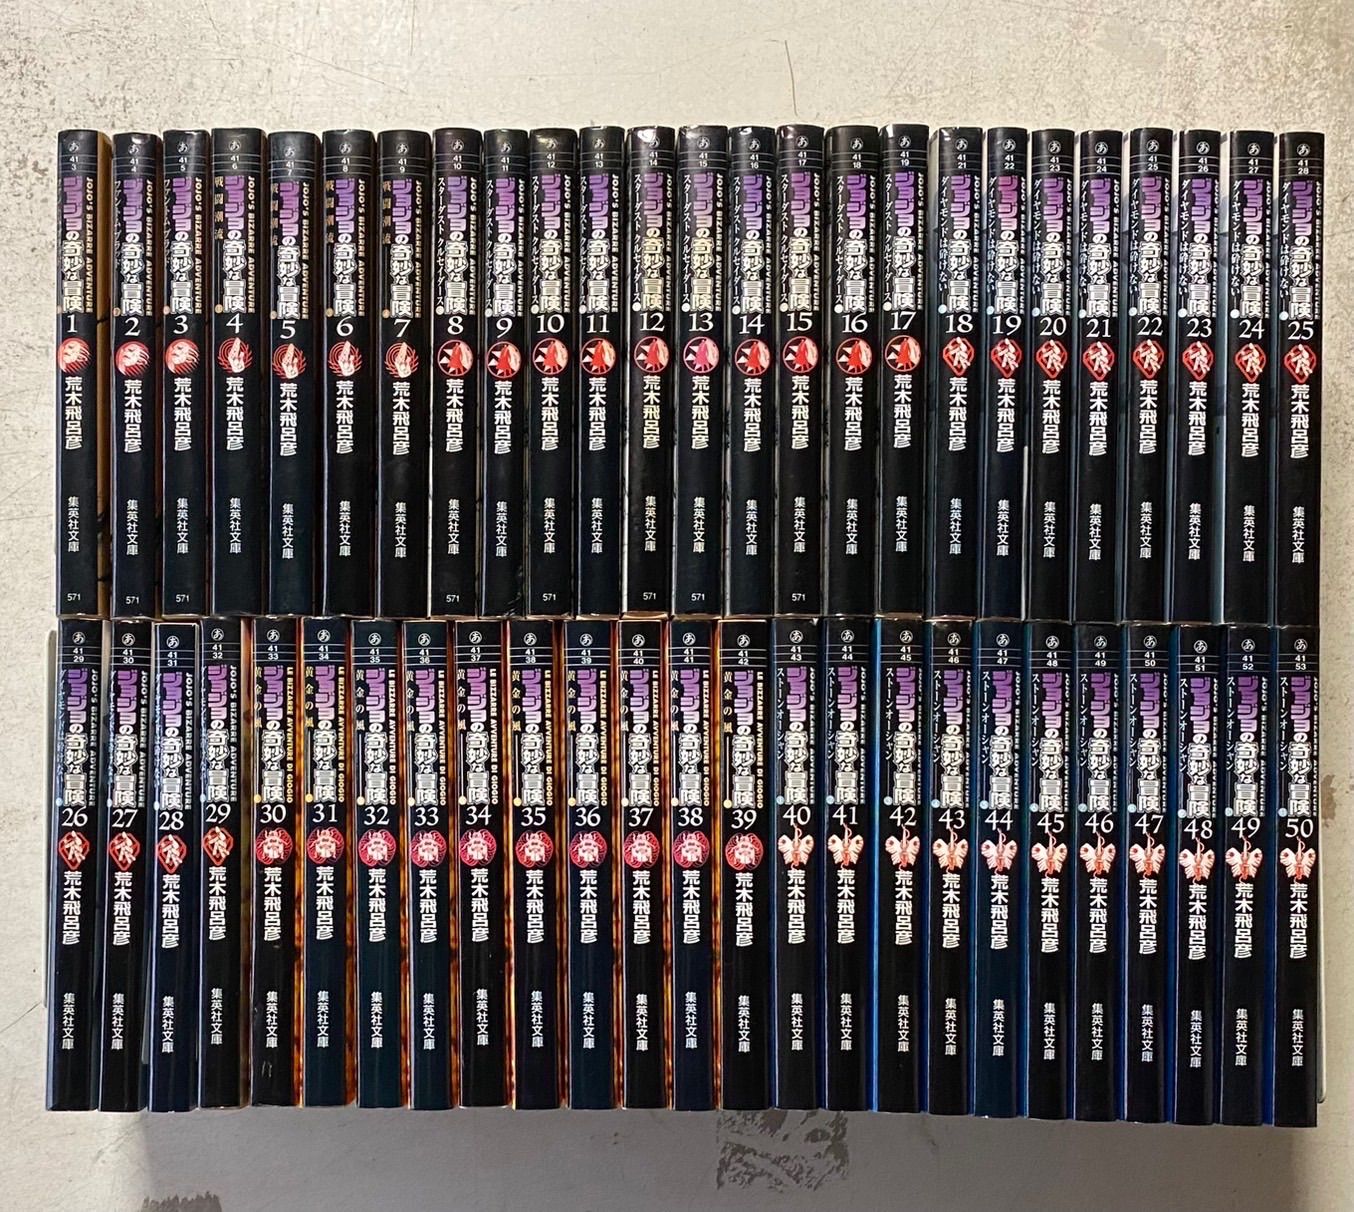 ジョジョの奇妙な冒険 文庫版 コミック 全50巻完結セット - 全巻セット